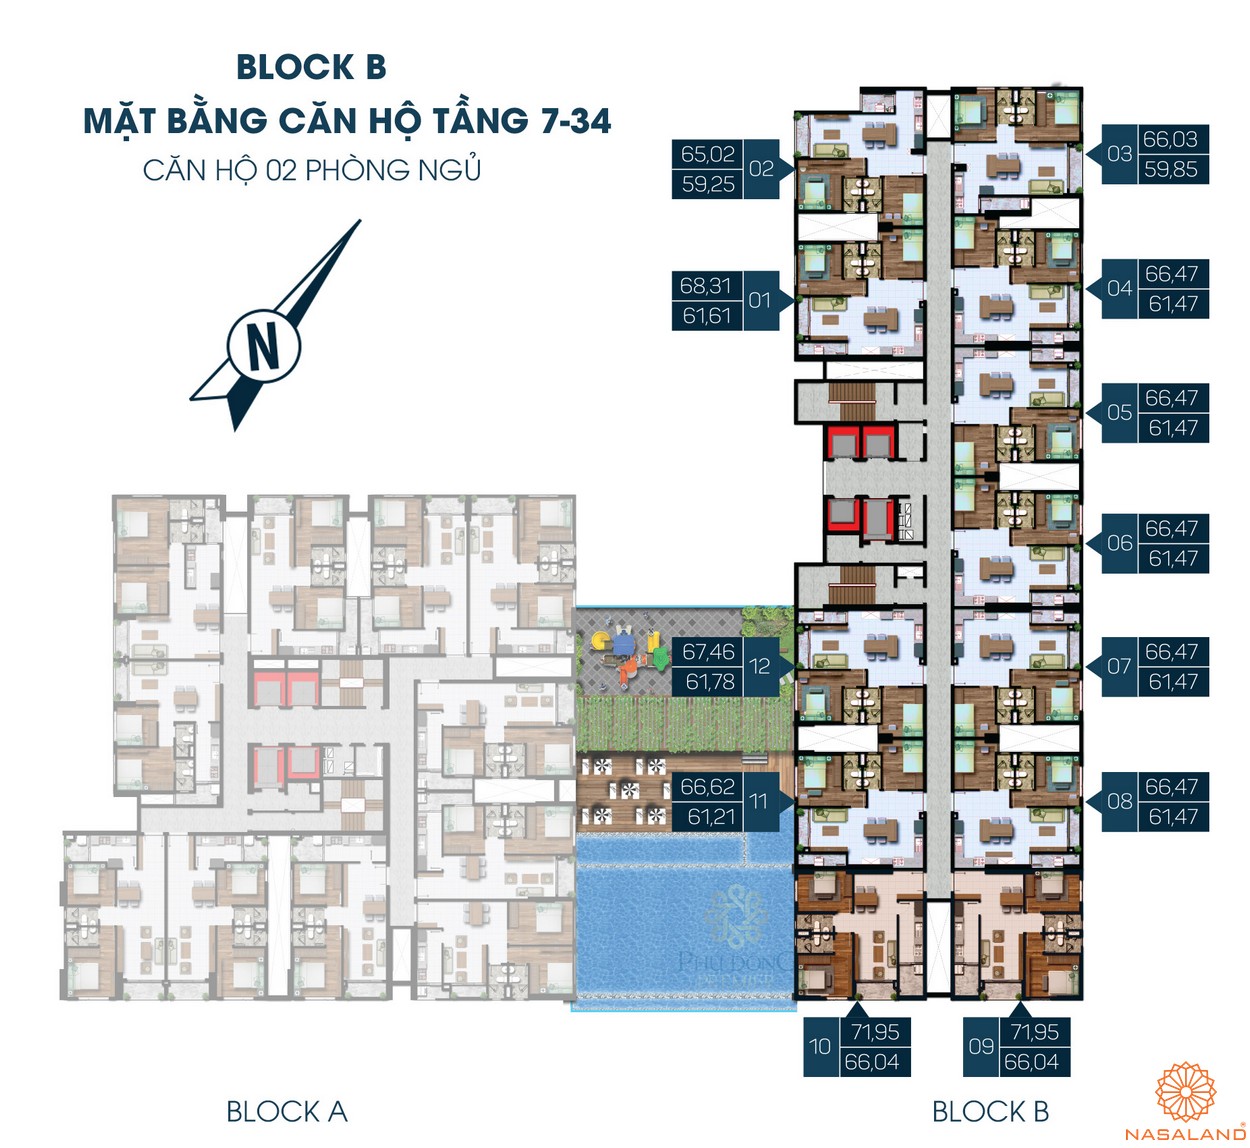 Mặt bằng dự án căn hộ Phú Đông Premier Bình Dương - Block B tầng 7-34 2PN